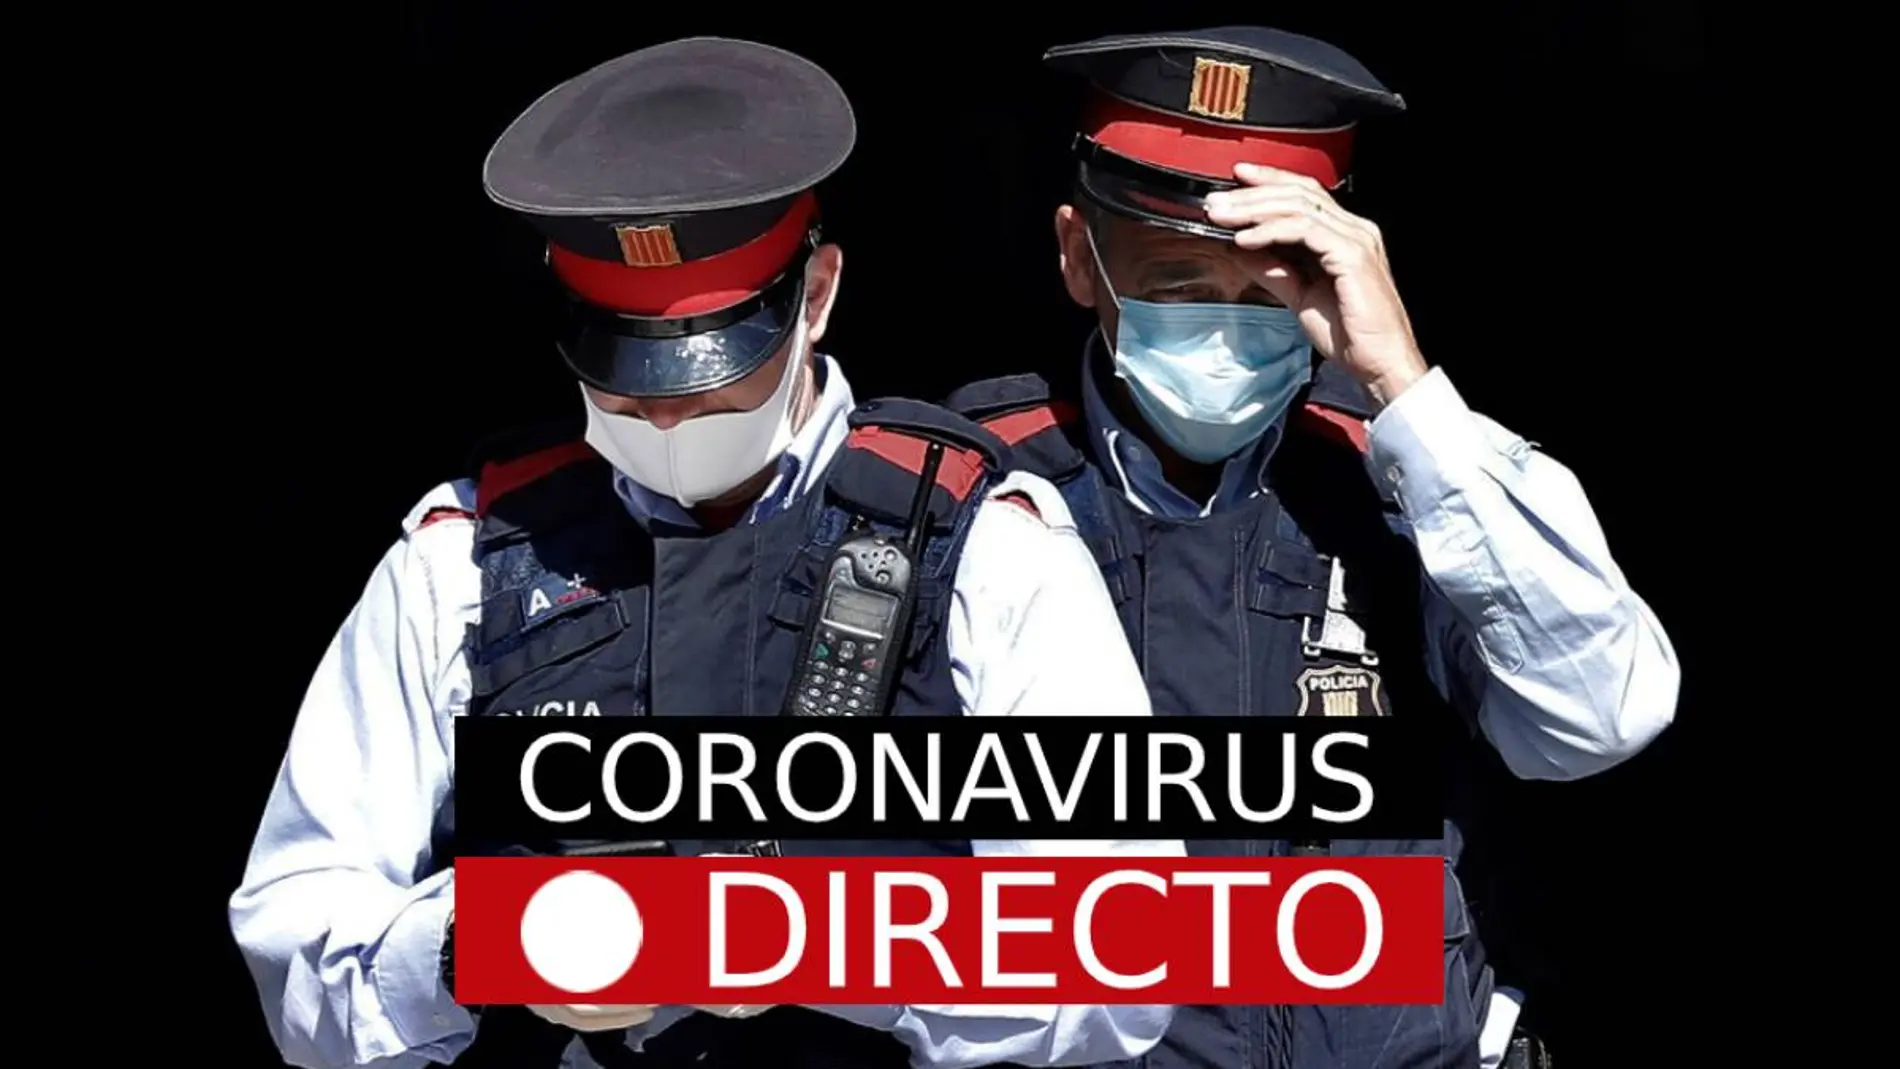 La última hora del coronavirus en España, en directo en laSexta.com